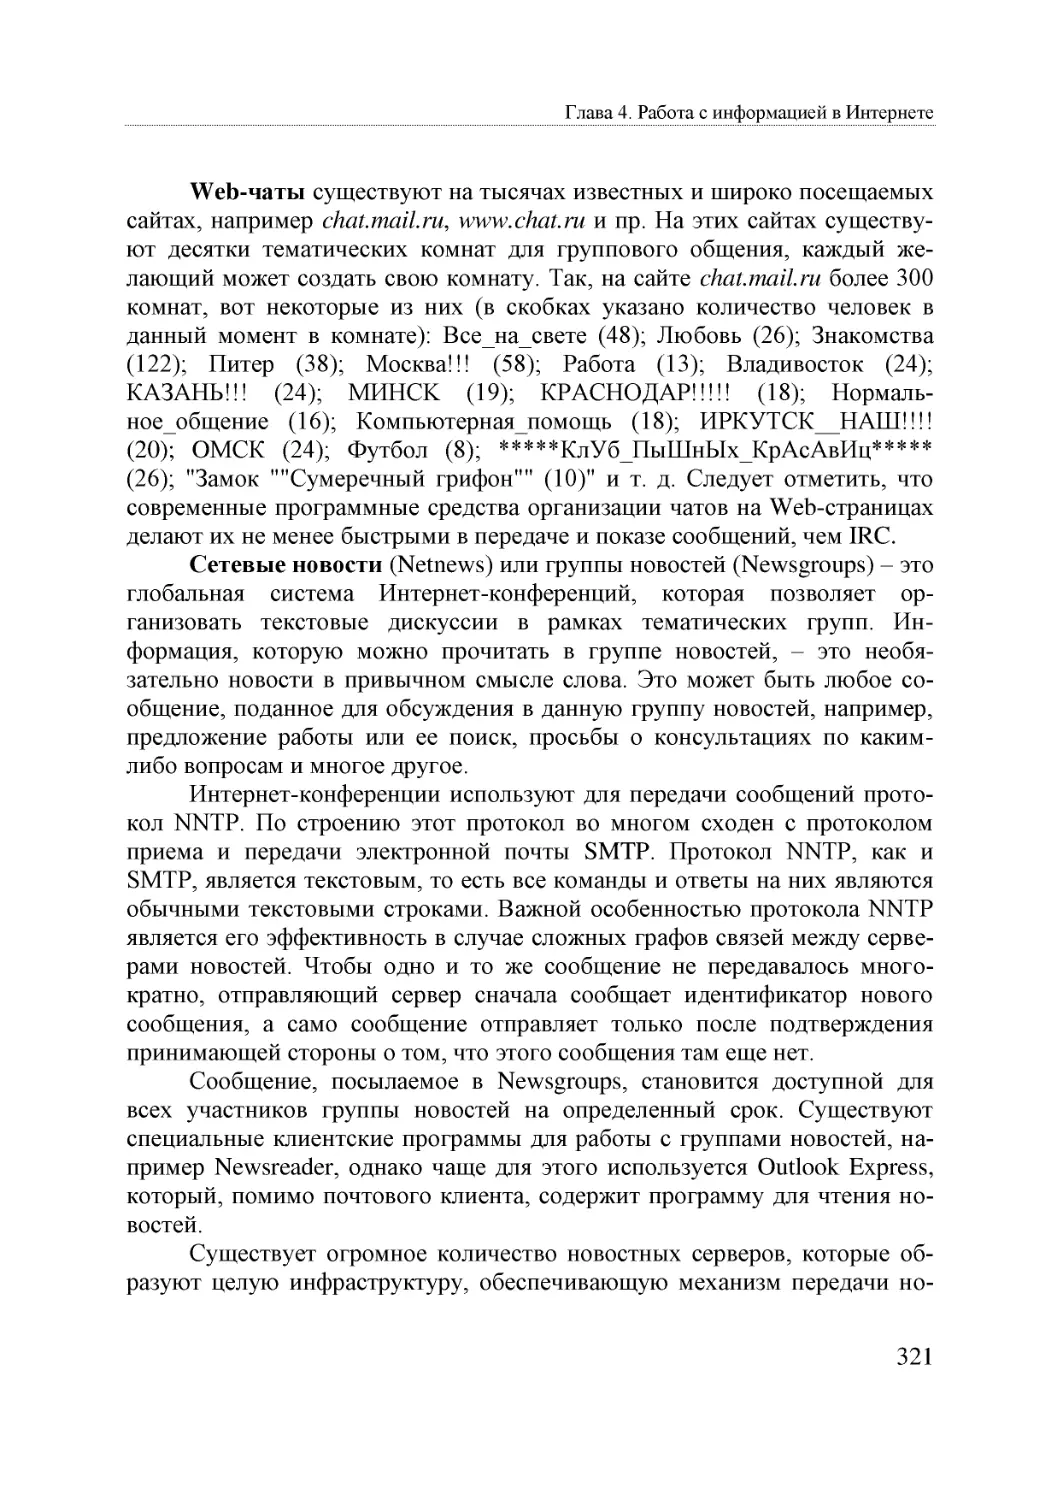 Informatika_Uchebnik_dlya_vuzov_2010 321